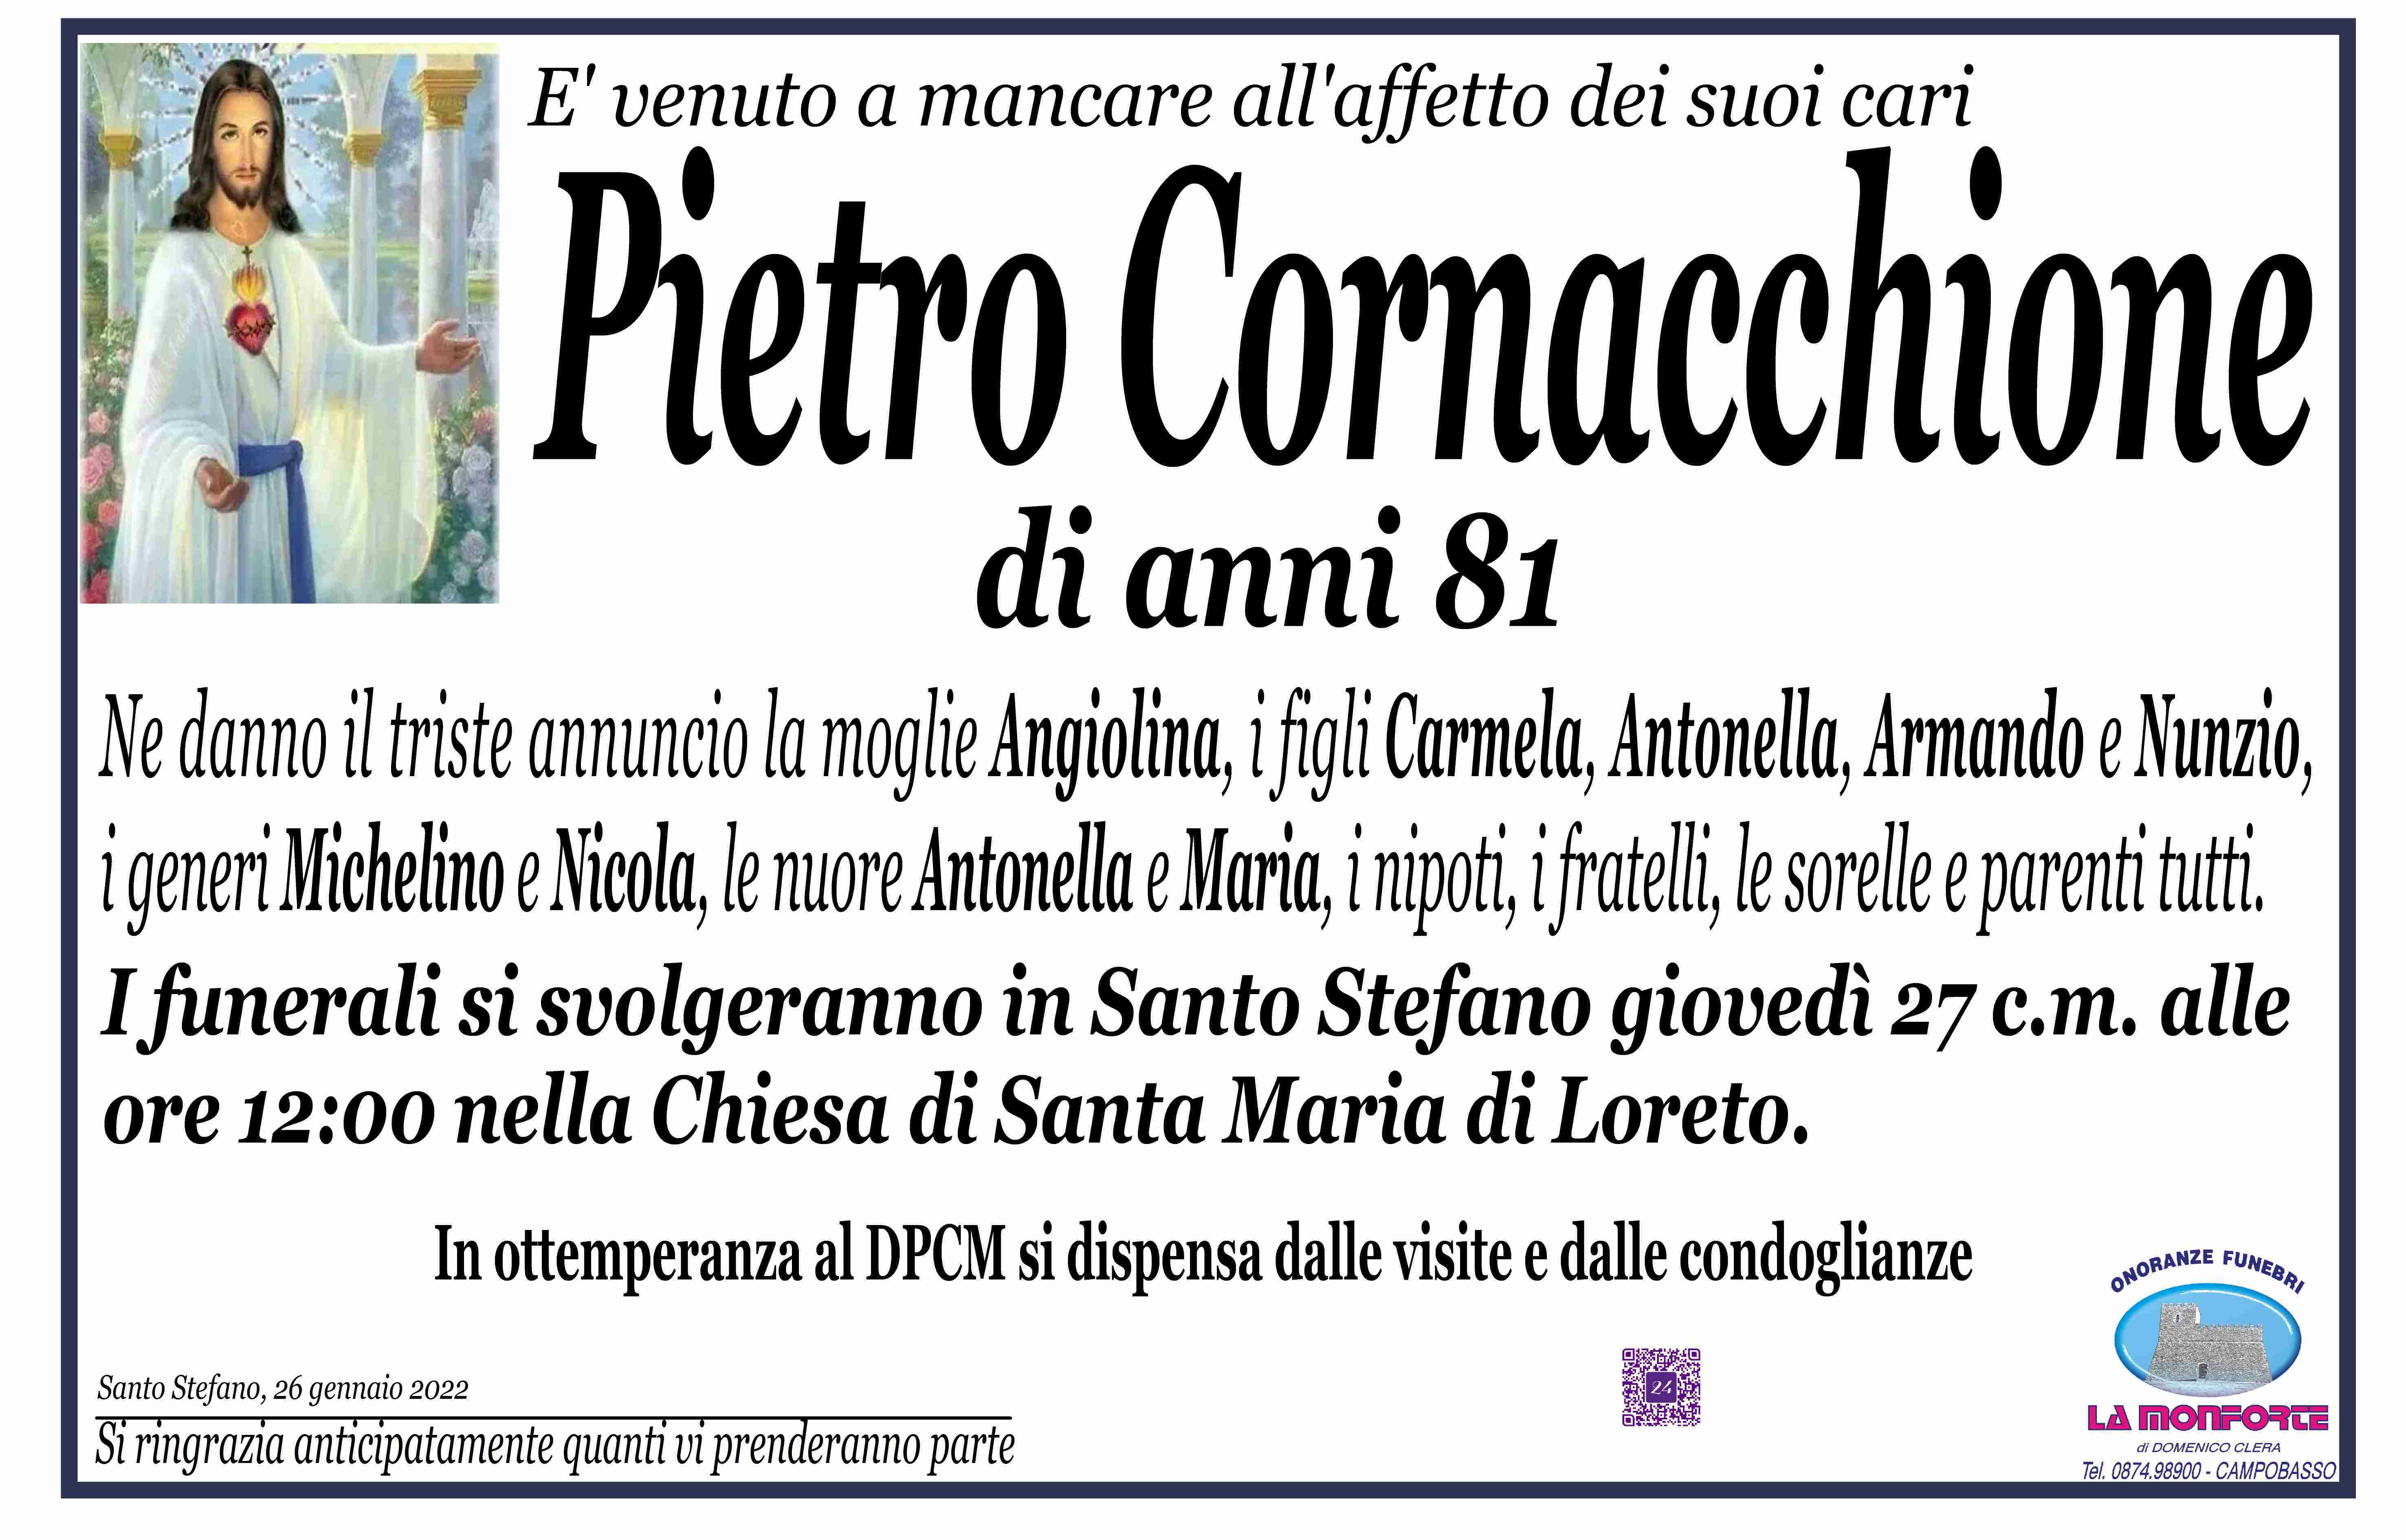 Pietro Cornacchione